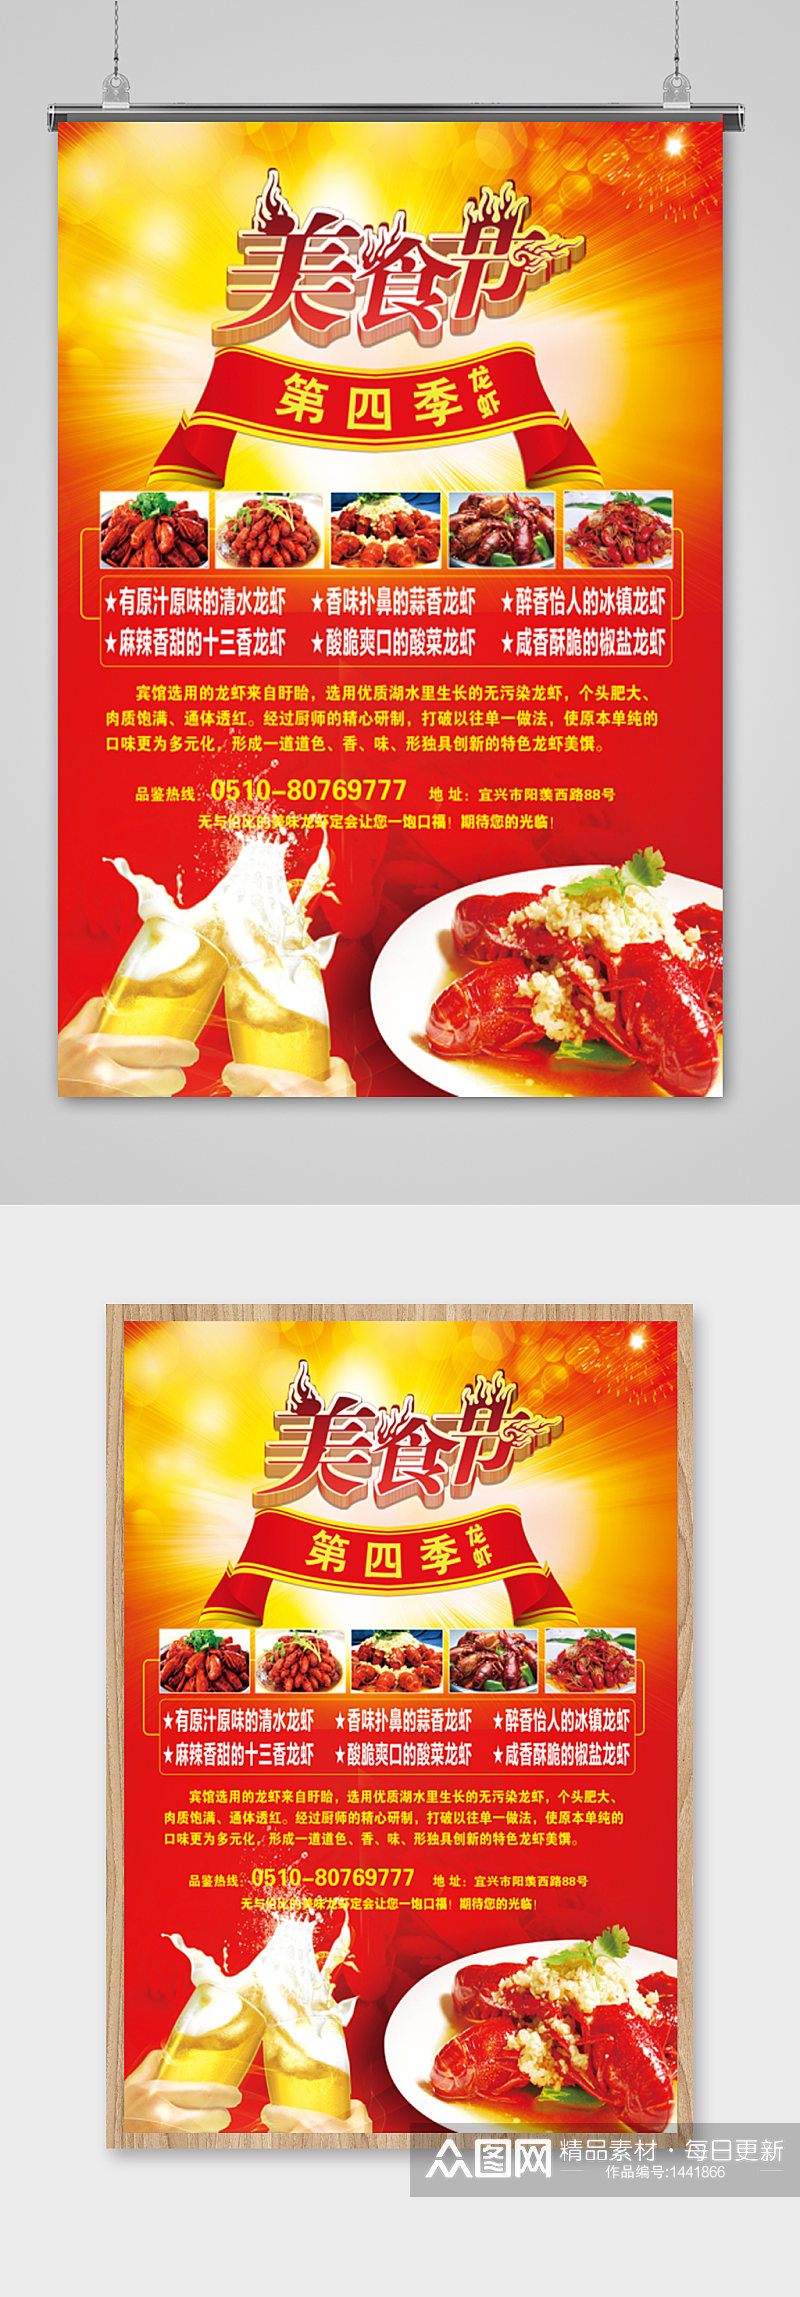 龙虾美食街节展板海报素材